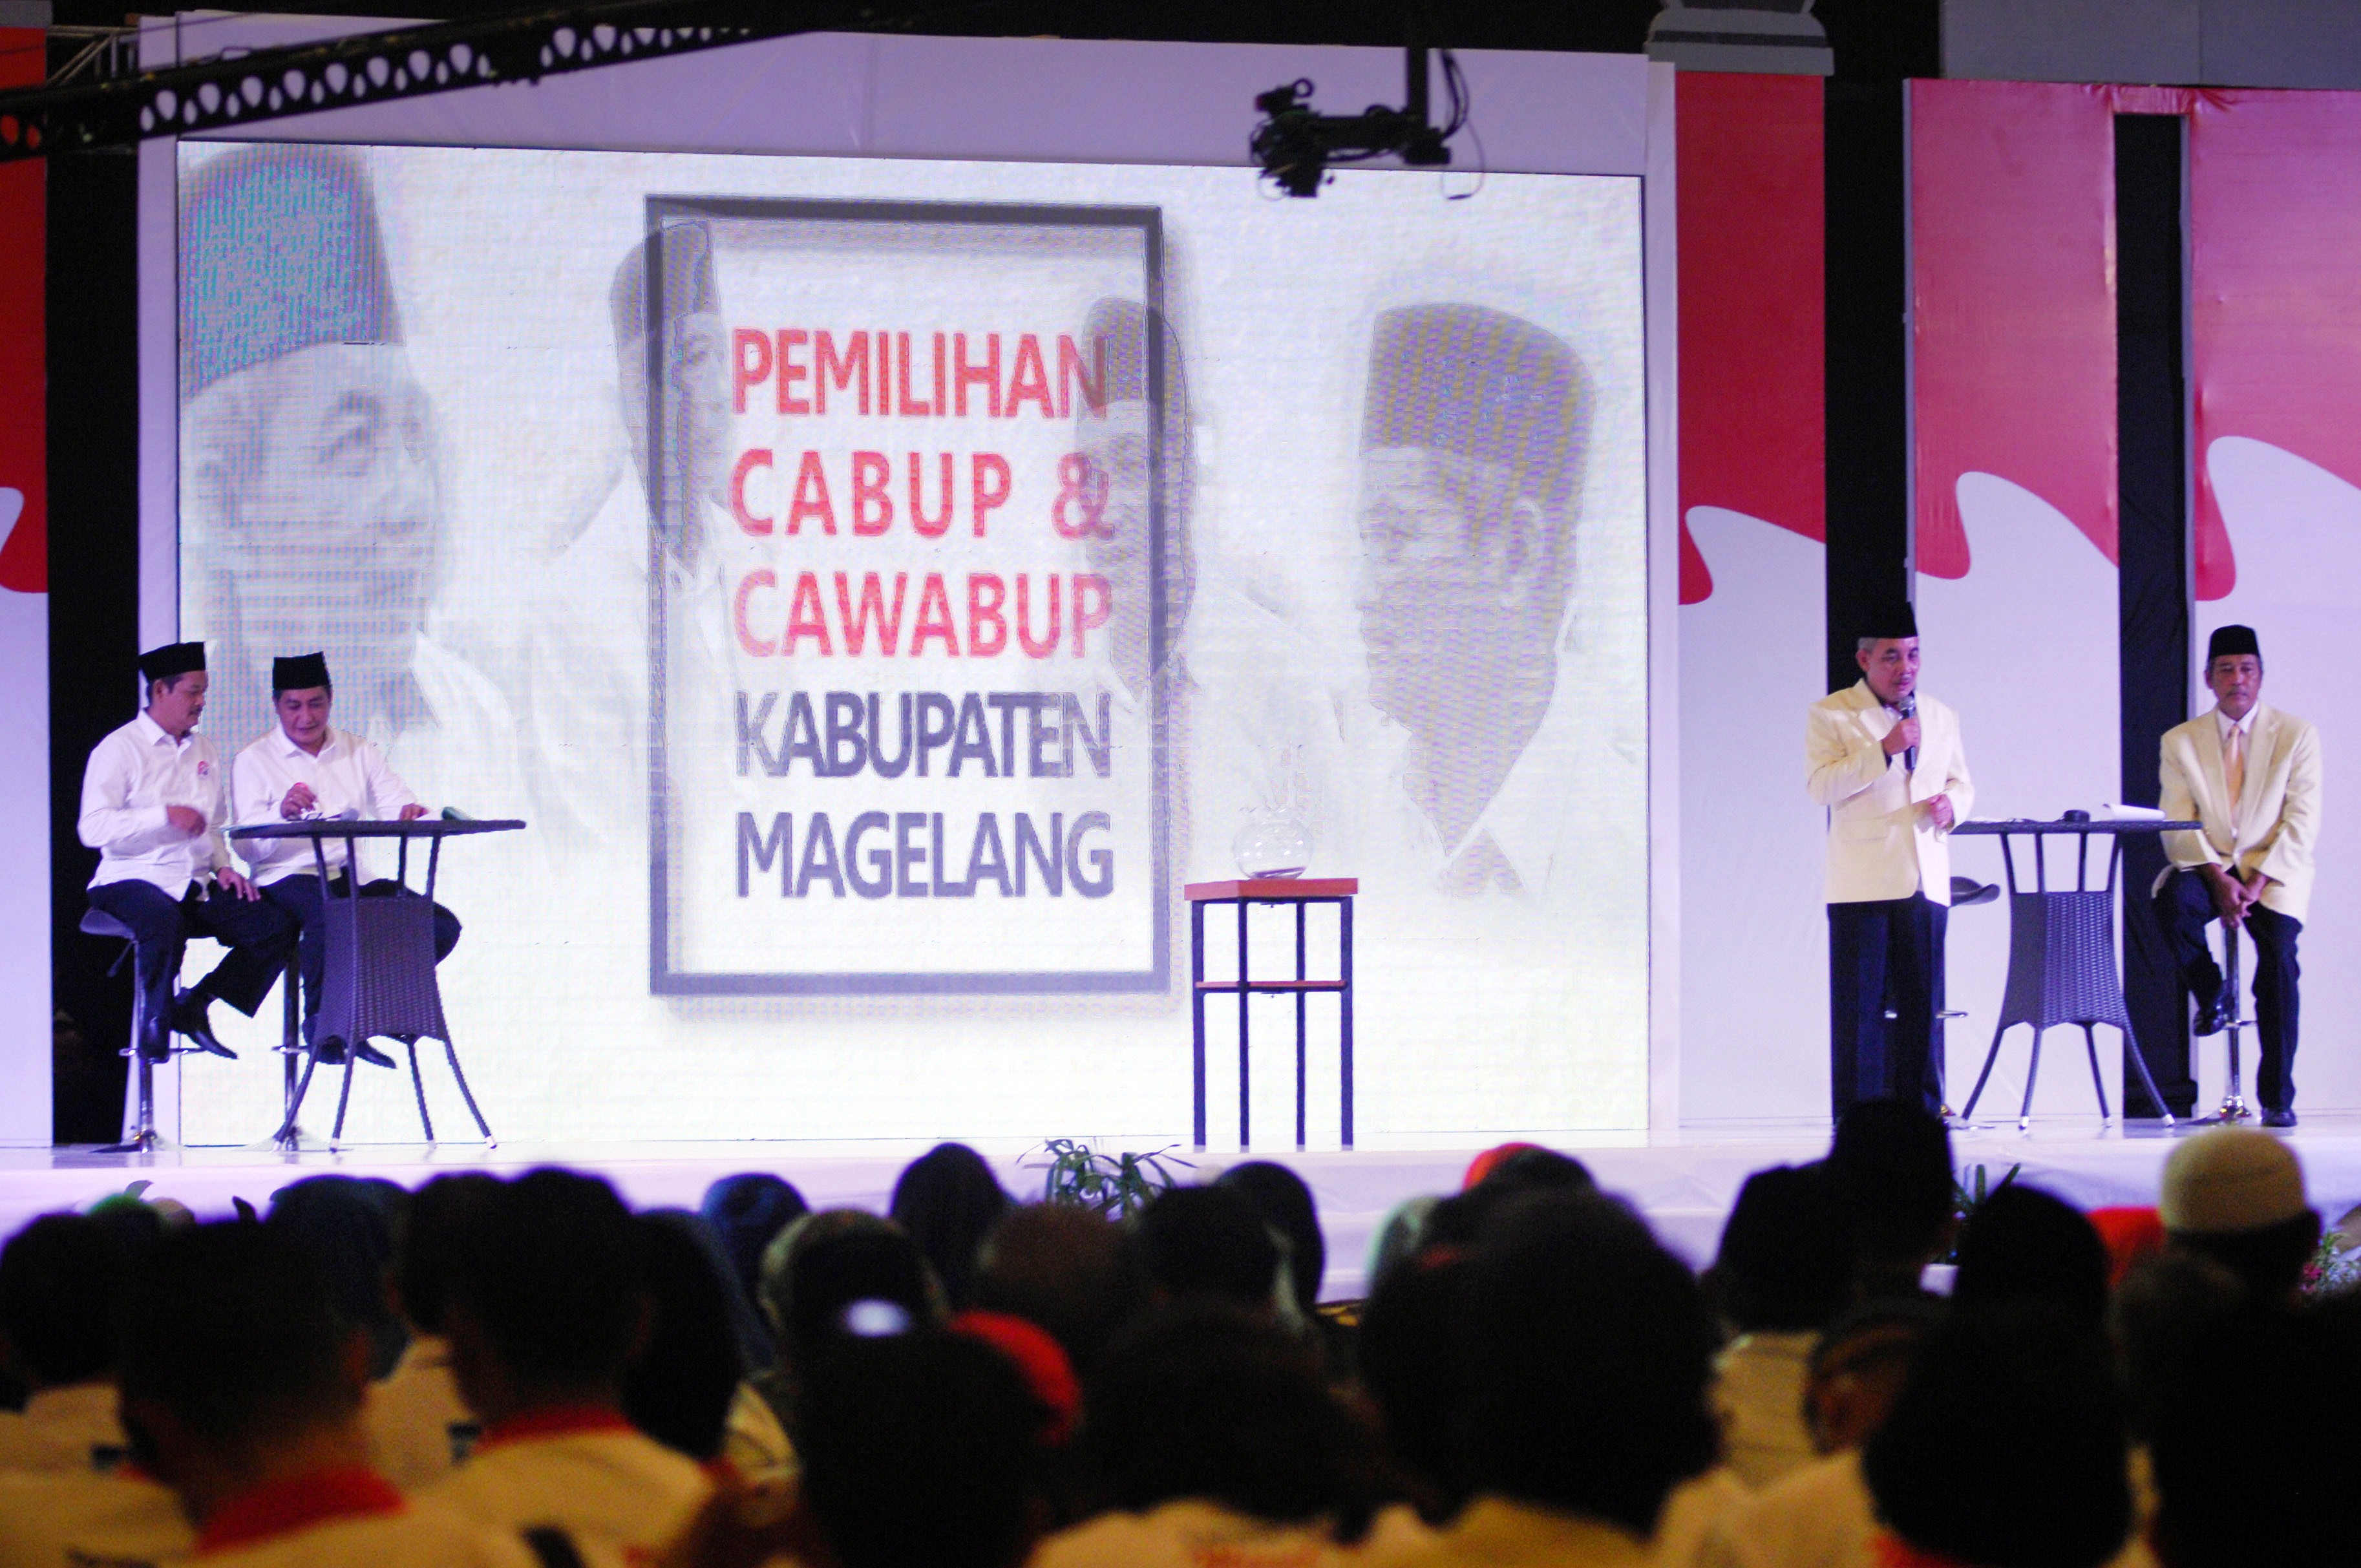   Debat Publik di Pilkada Kabupaten Malang Tanpa Pendukung  